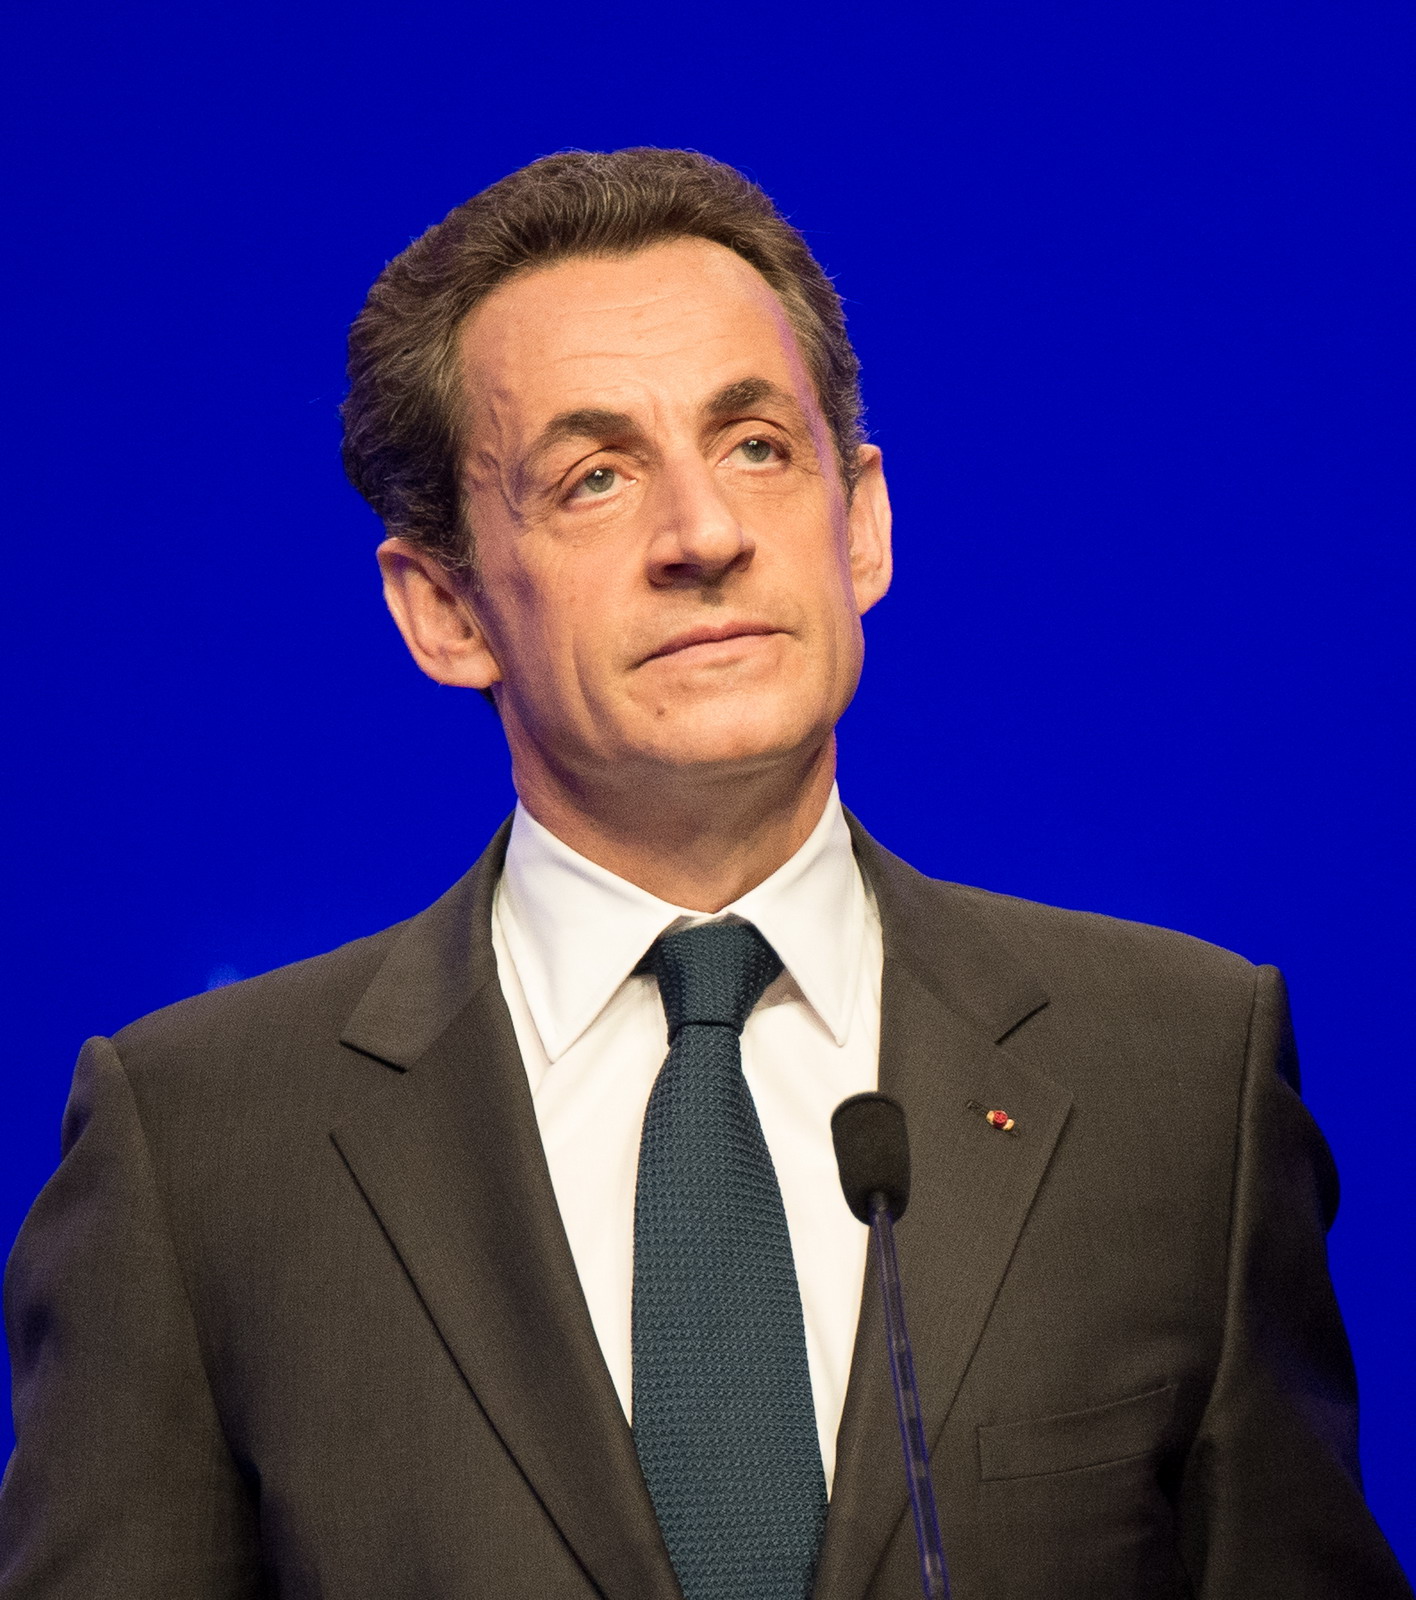 Mit keres Sarkozy exelnök Abu Dhabiban?